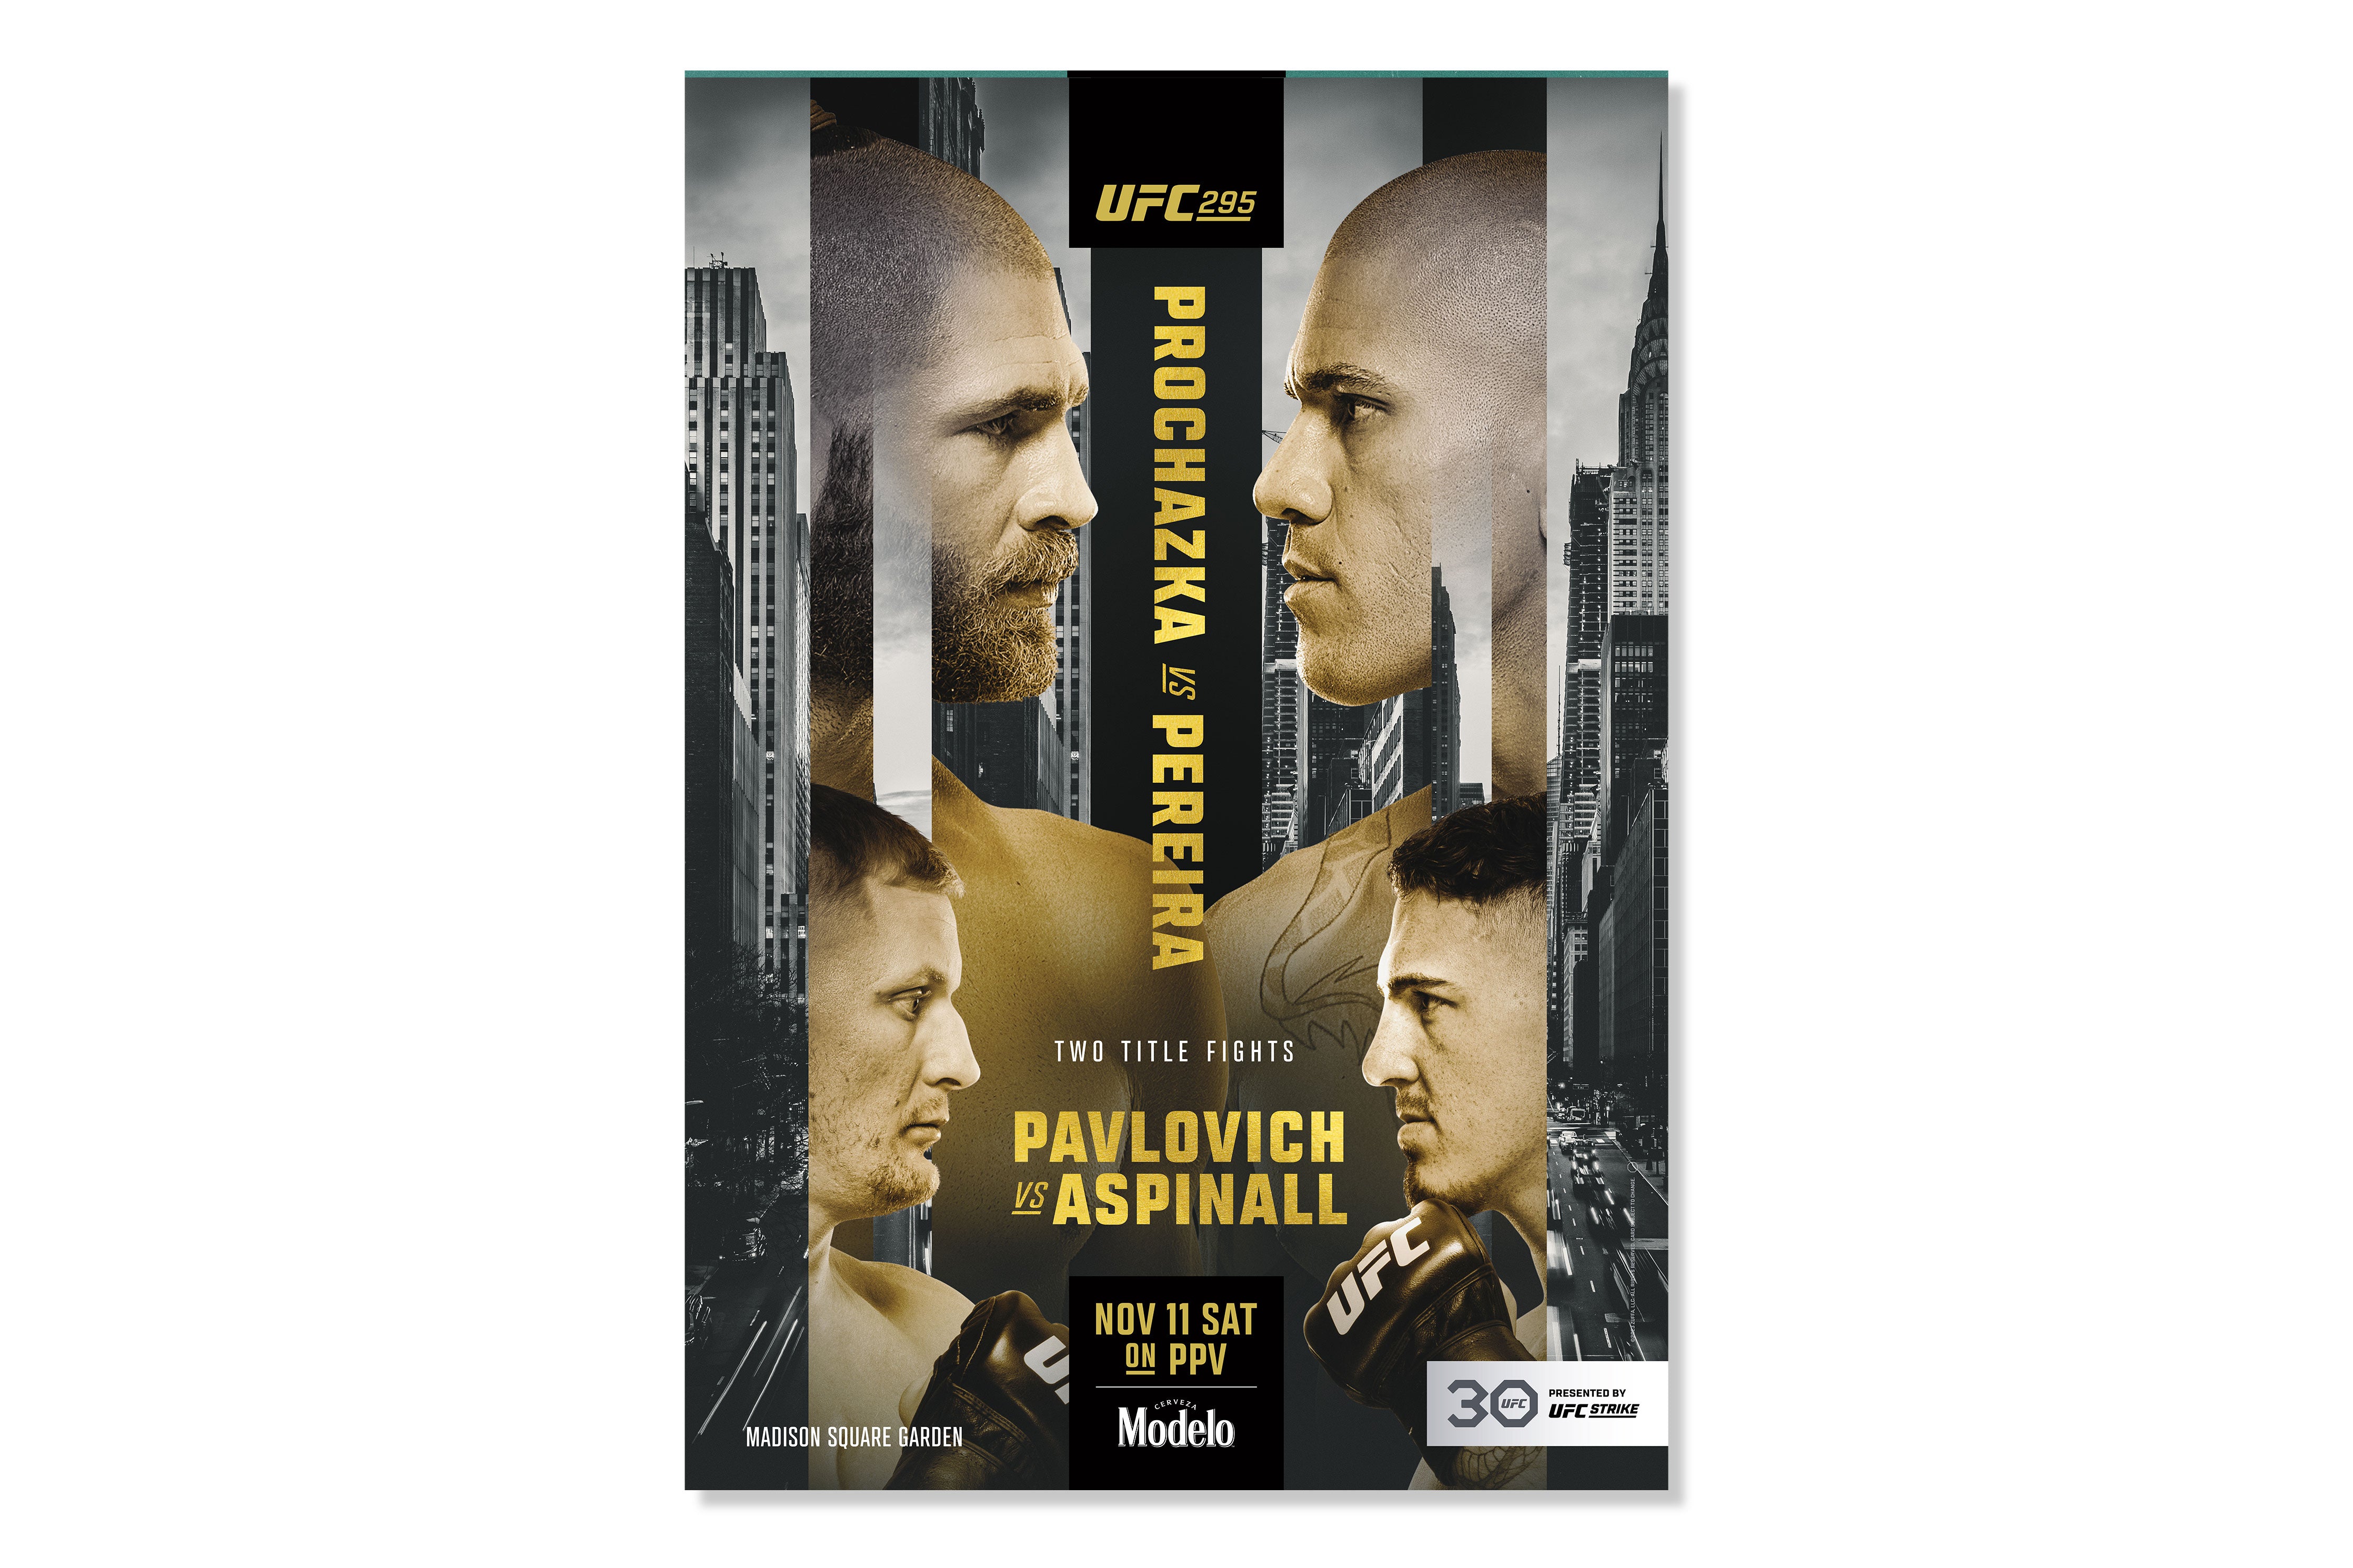 UFC 295: Prochazka vs Pereira Autographed Event Poster